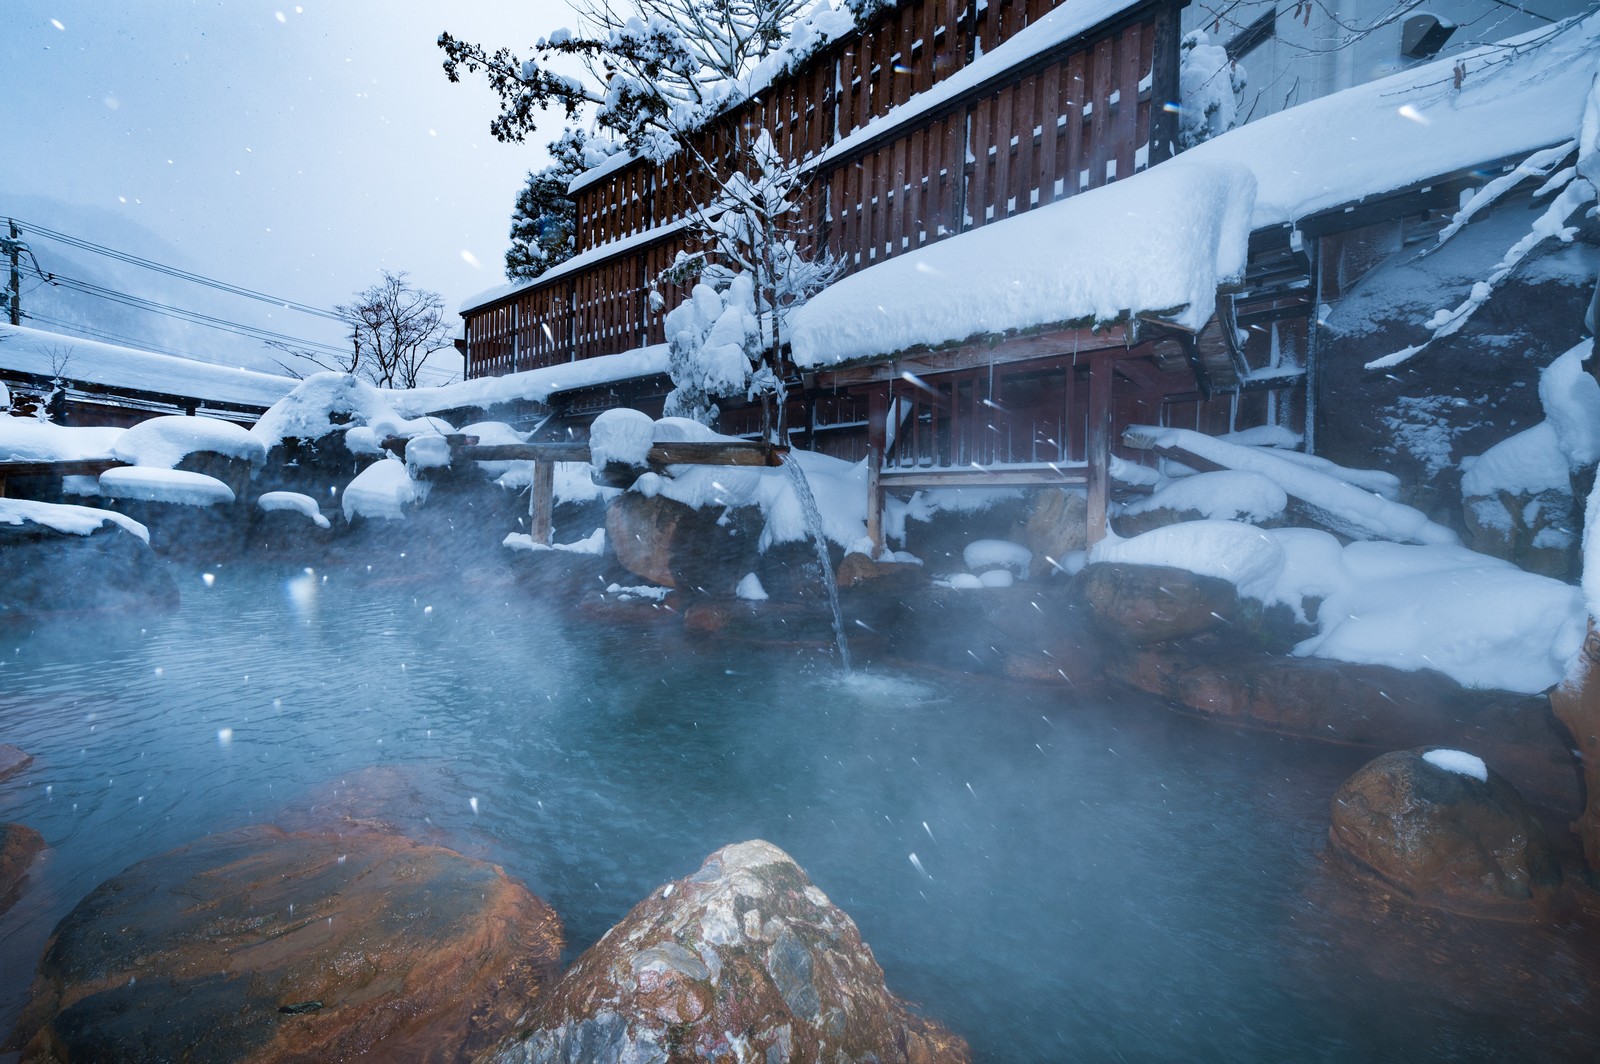 年末年始の温泉旅行におすすめな旅館ランキングtop 大晦日や正月にも利用可能 温泉部